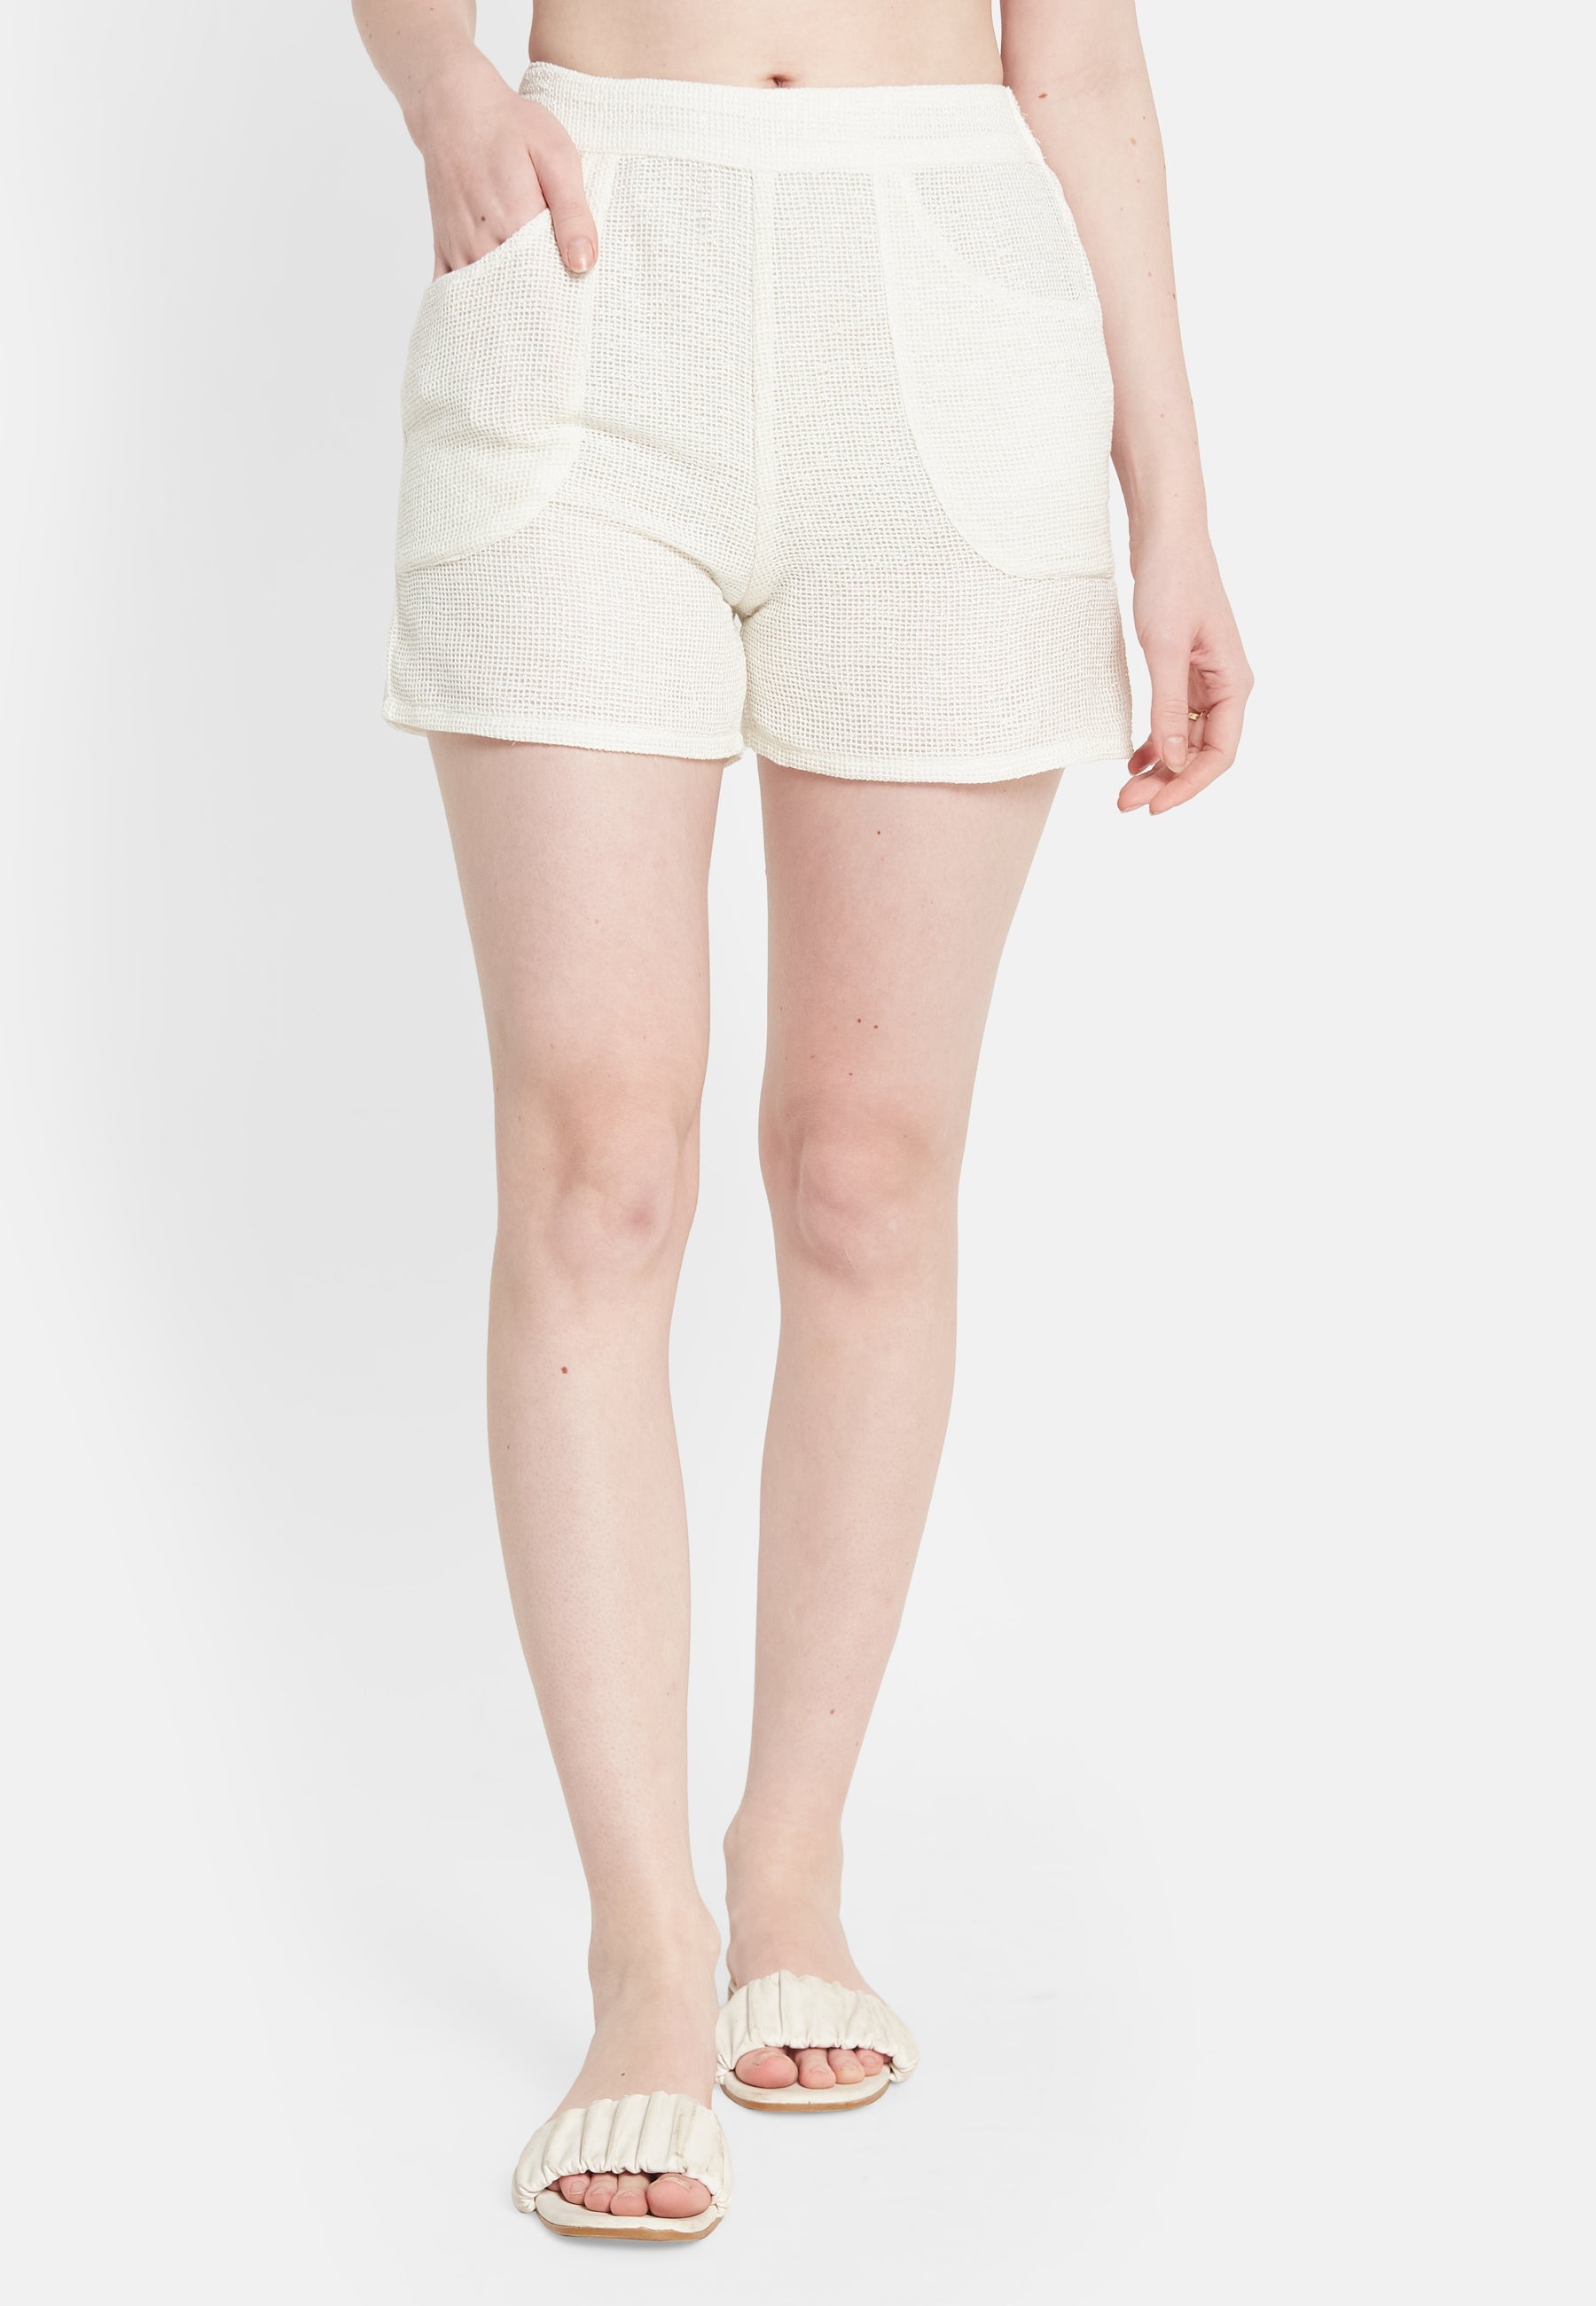 Pantalones cortos blancos de la bahía